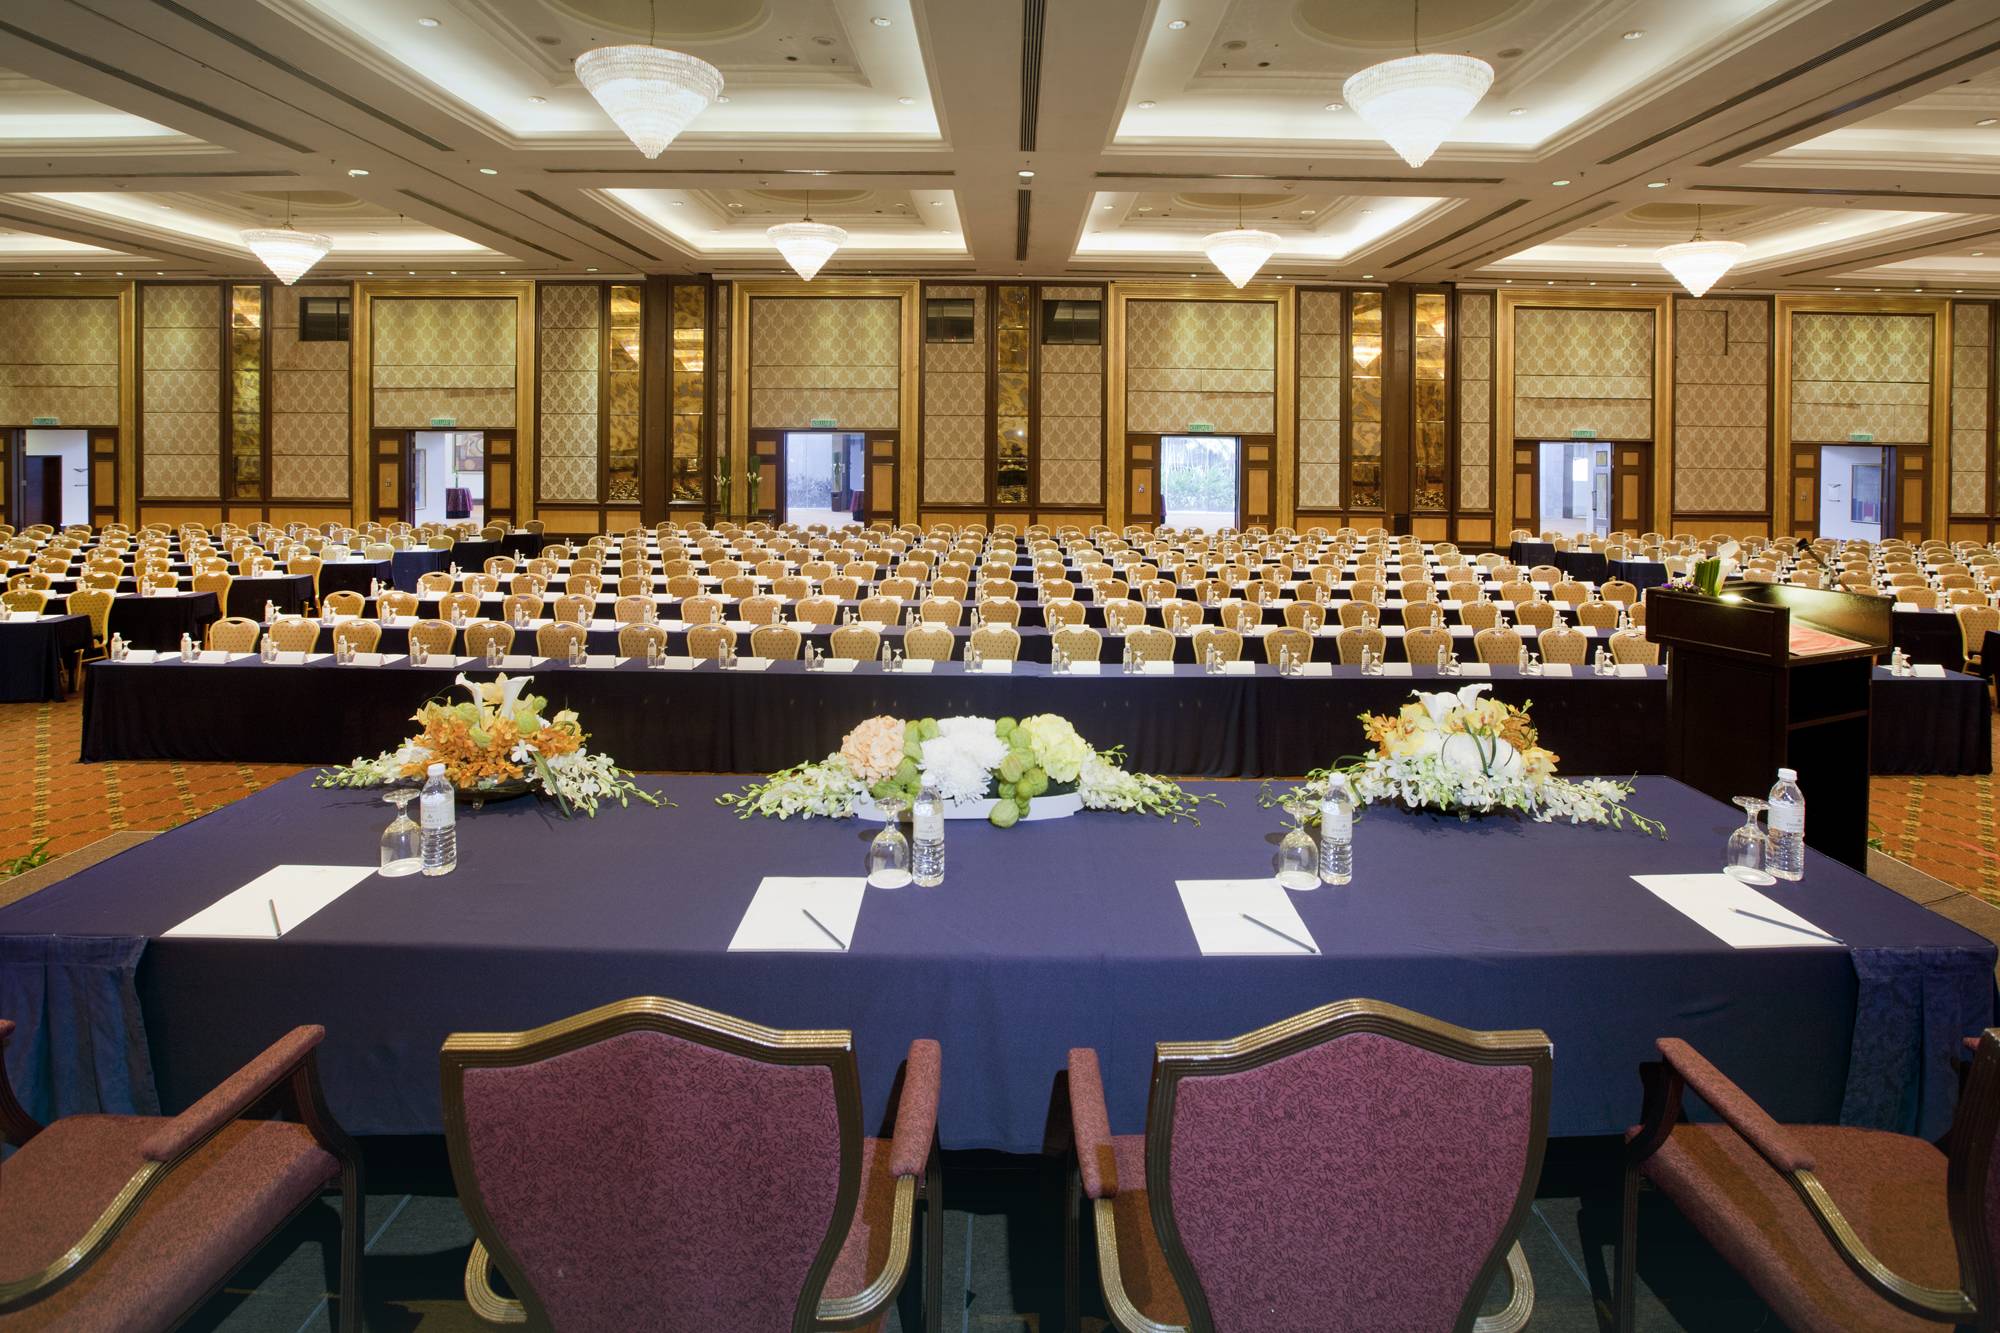 梳邦帝盛君豪酒店无柱式宴会厅... 绝对适合作为国际会议和研讨会的场合